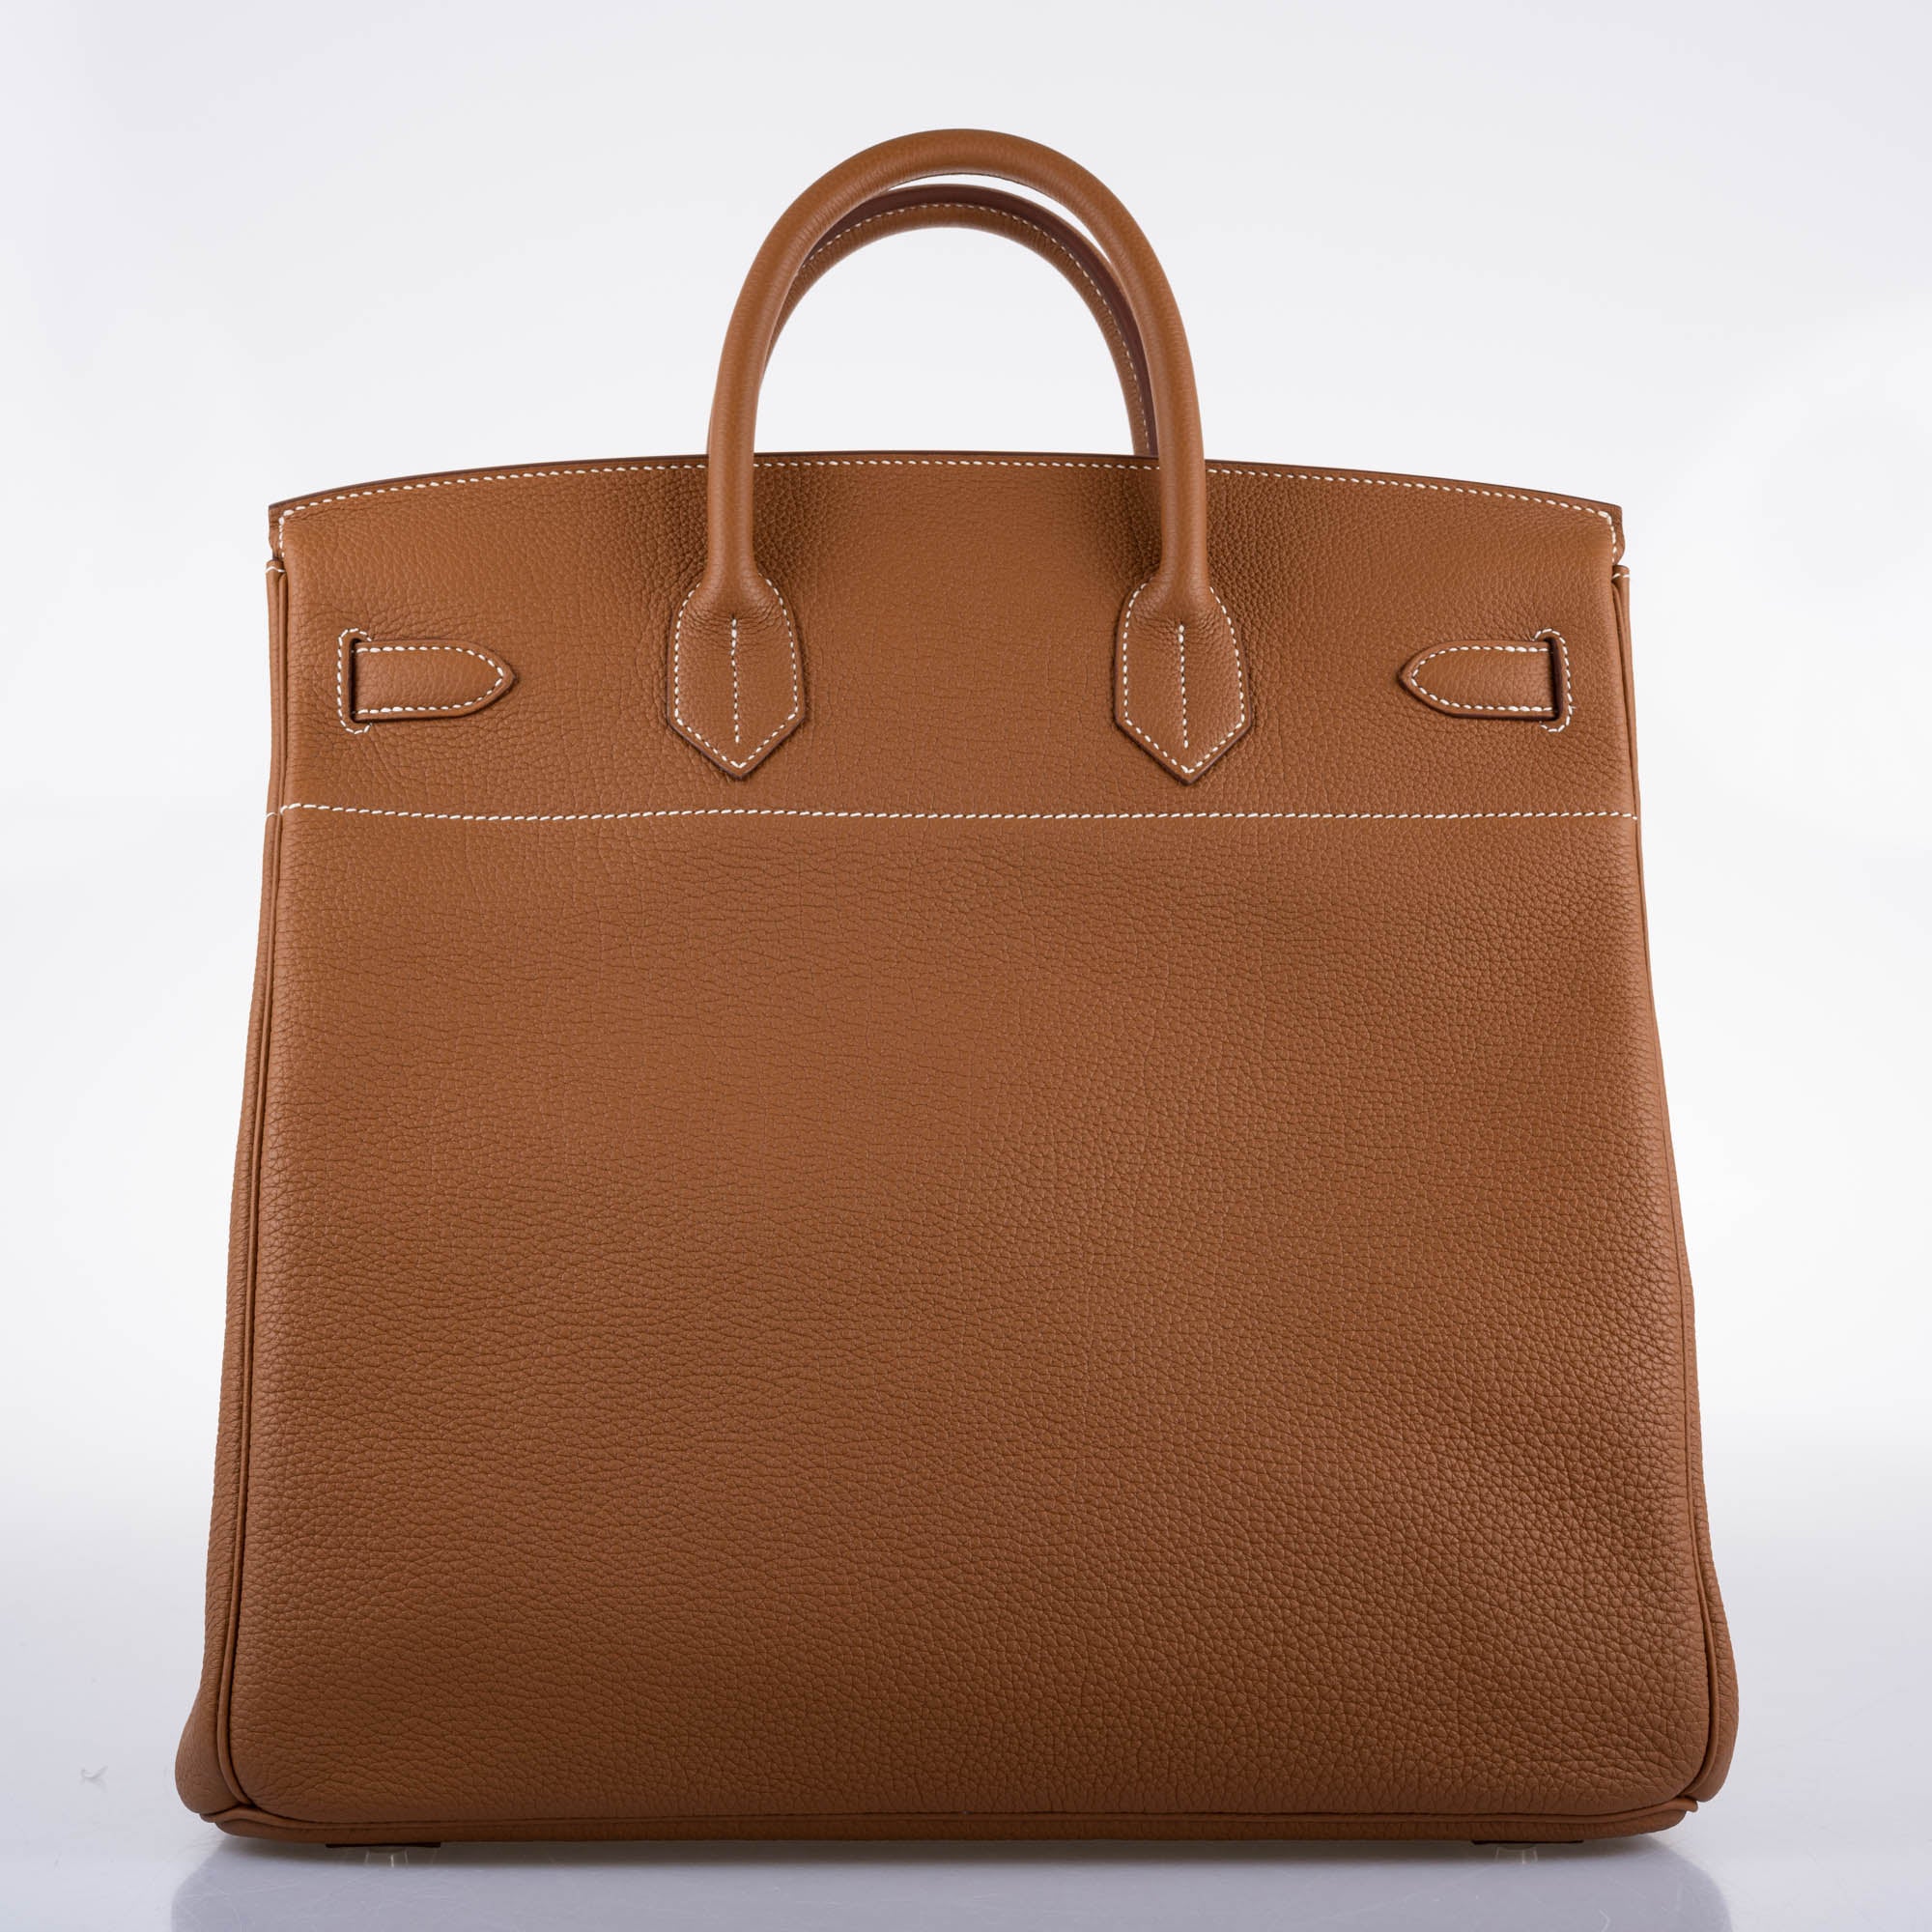 Hermès Birkin 40 HAC Gold Togo leather Palladium Hardware - 2021, Z